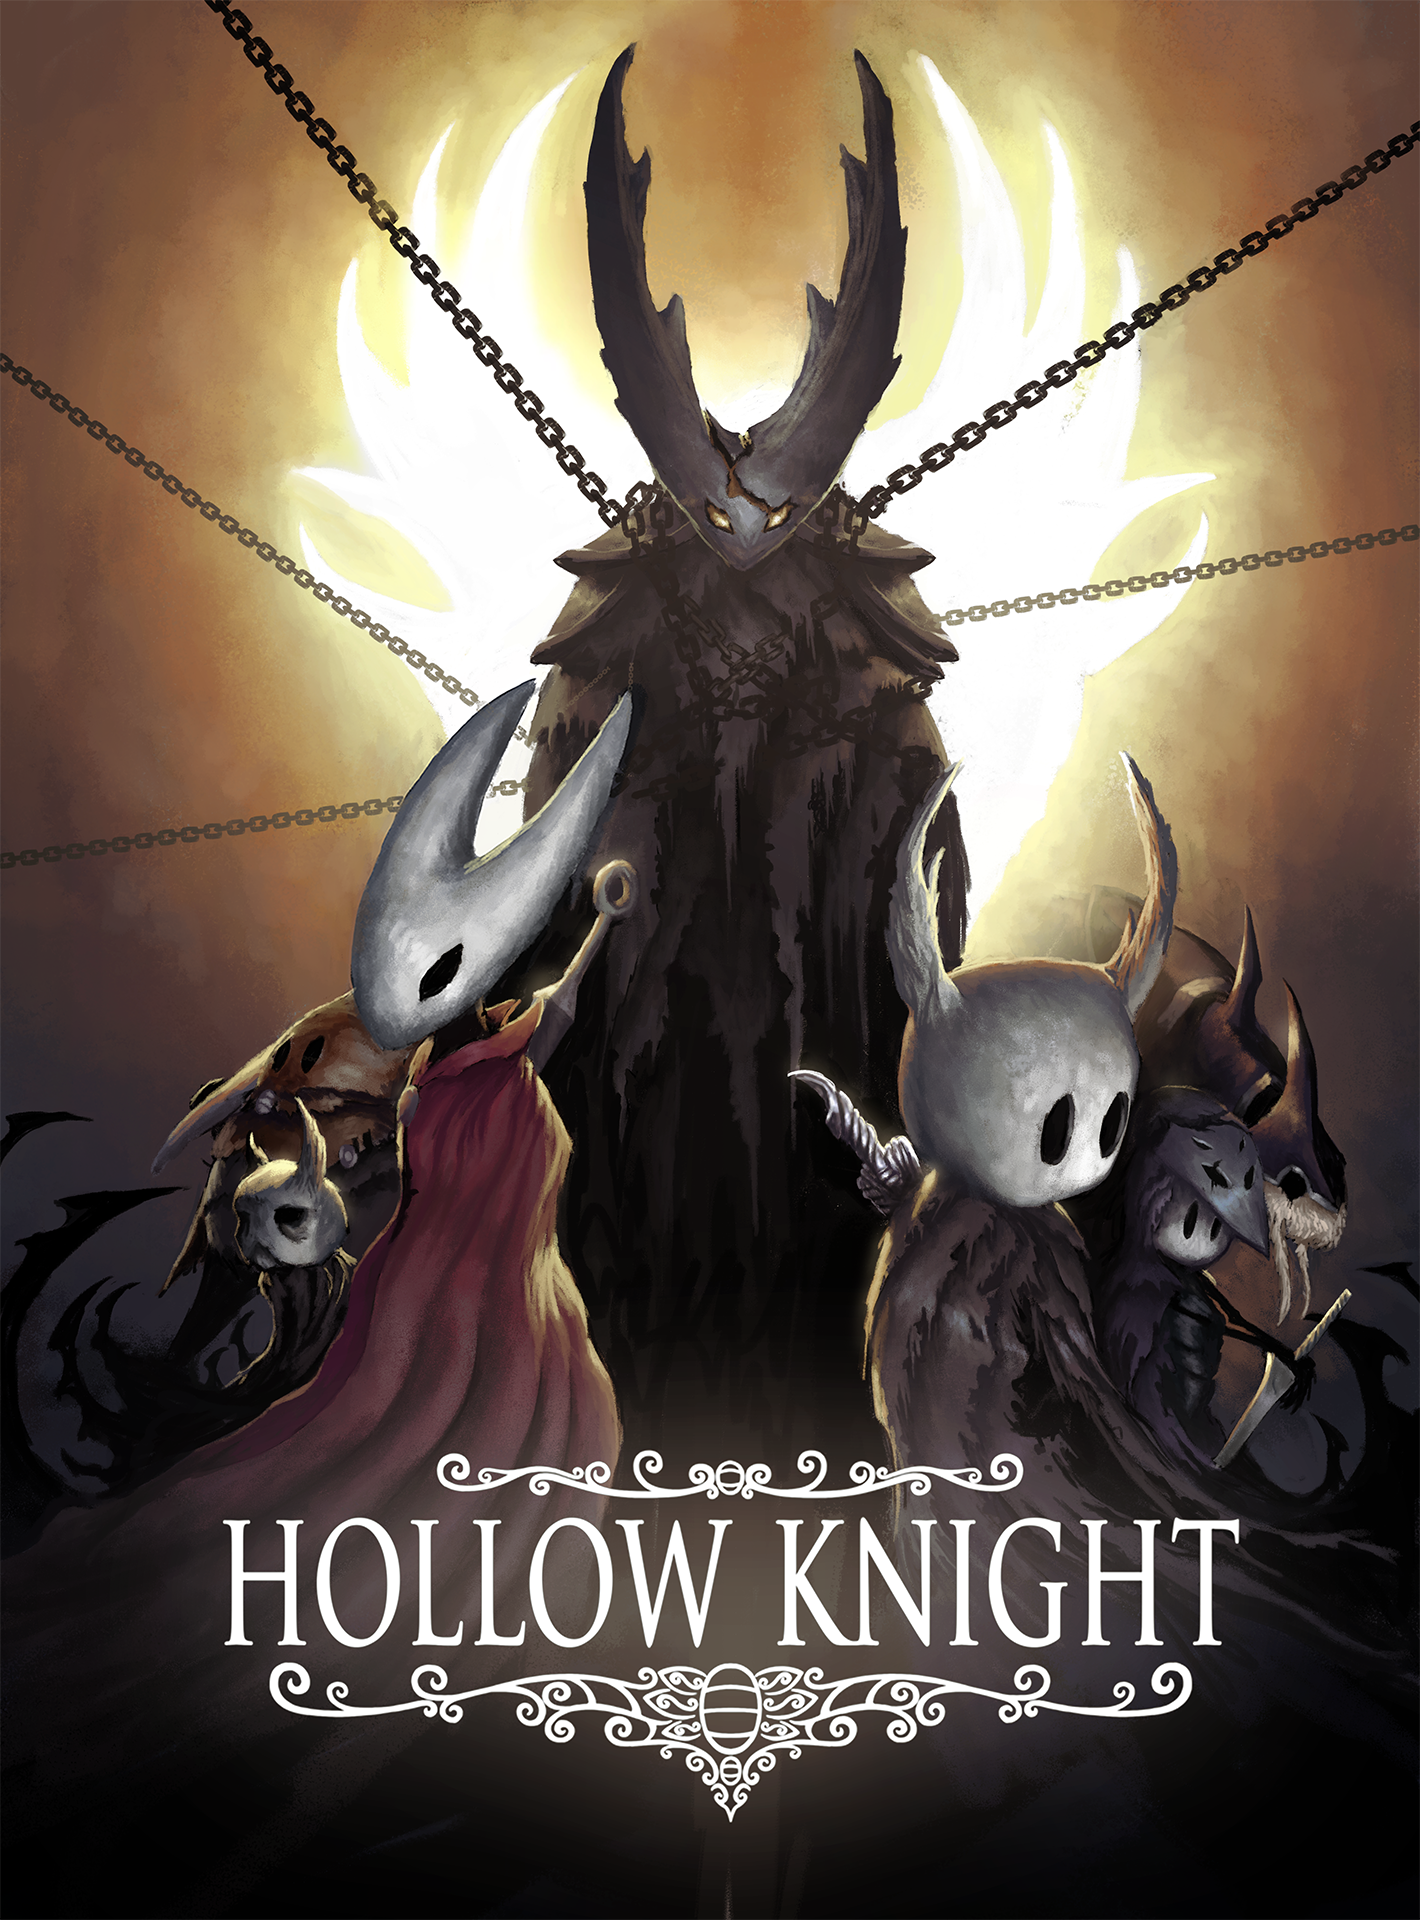 Hollow Knight (Poster) by Istrandar on DeviantArt